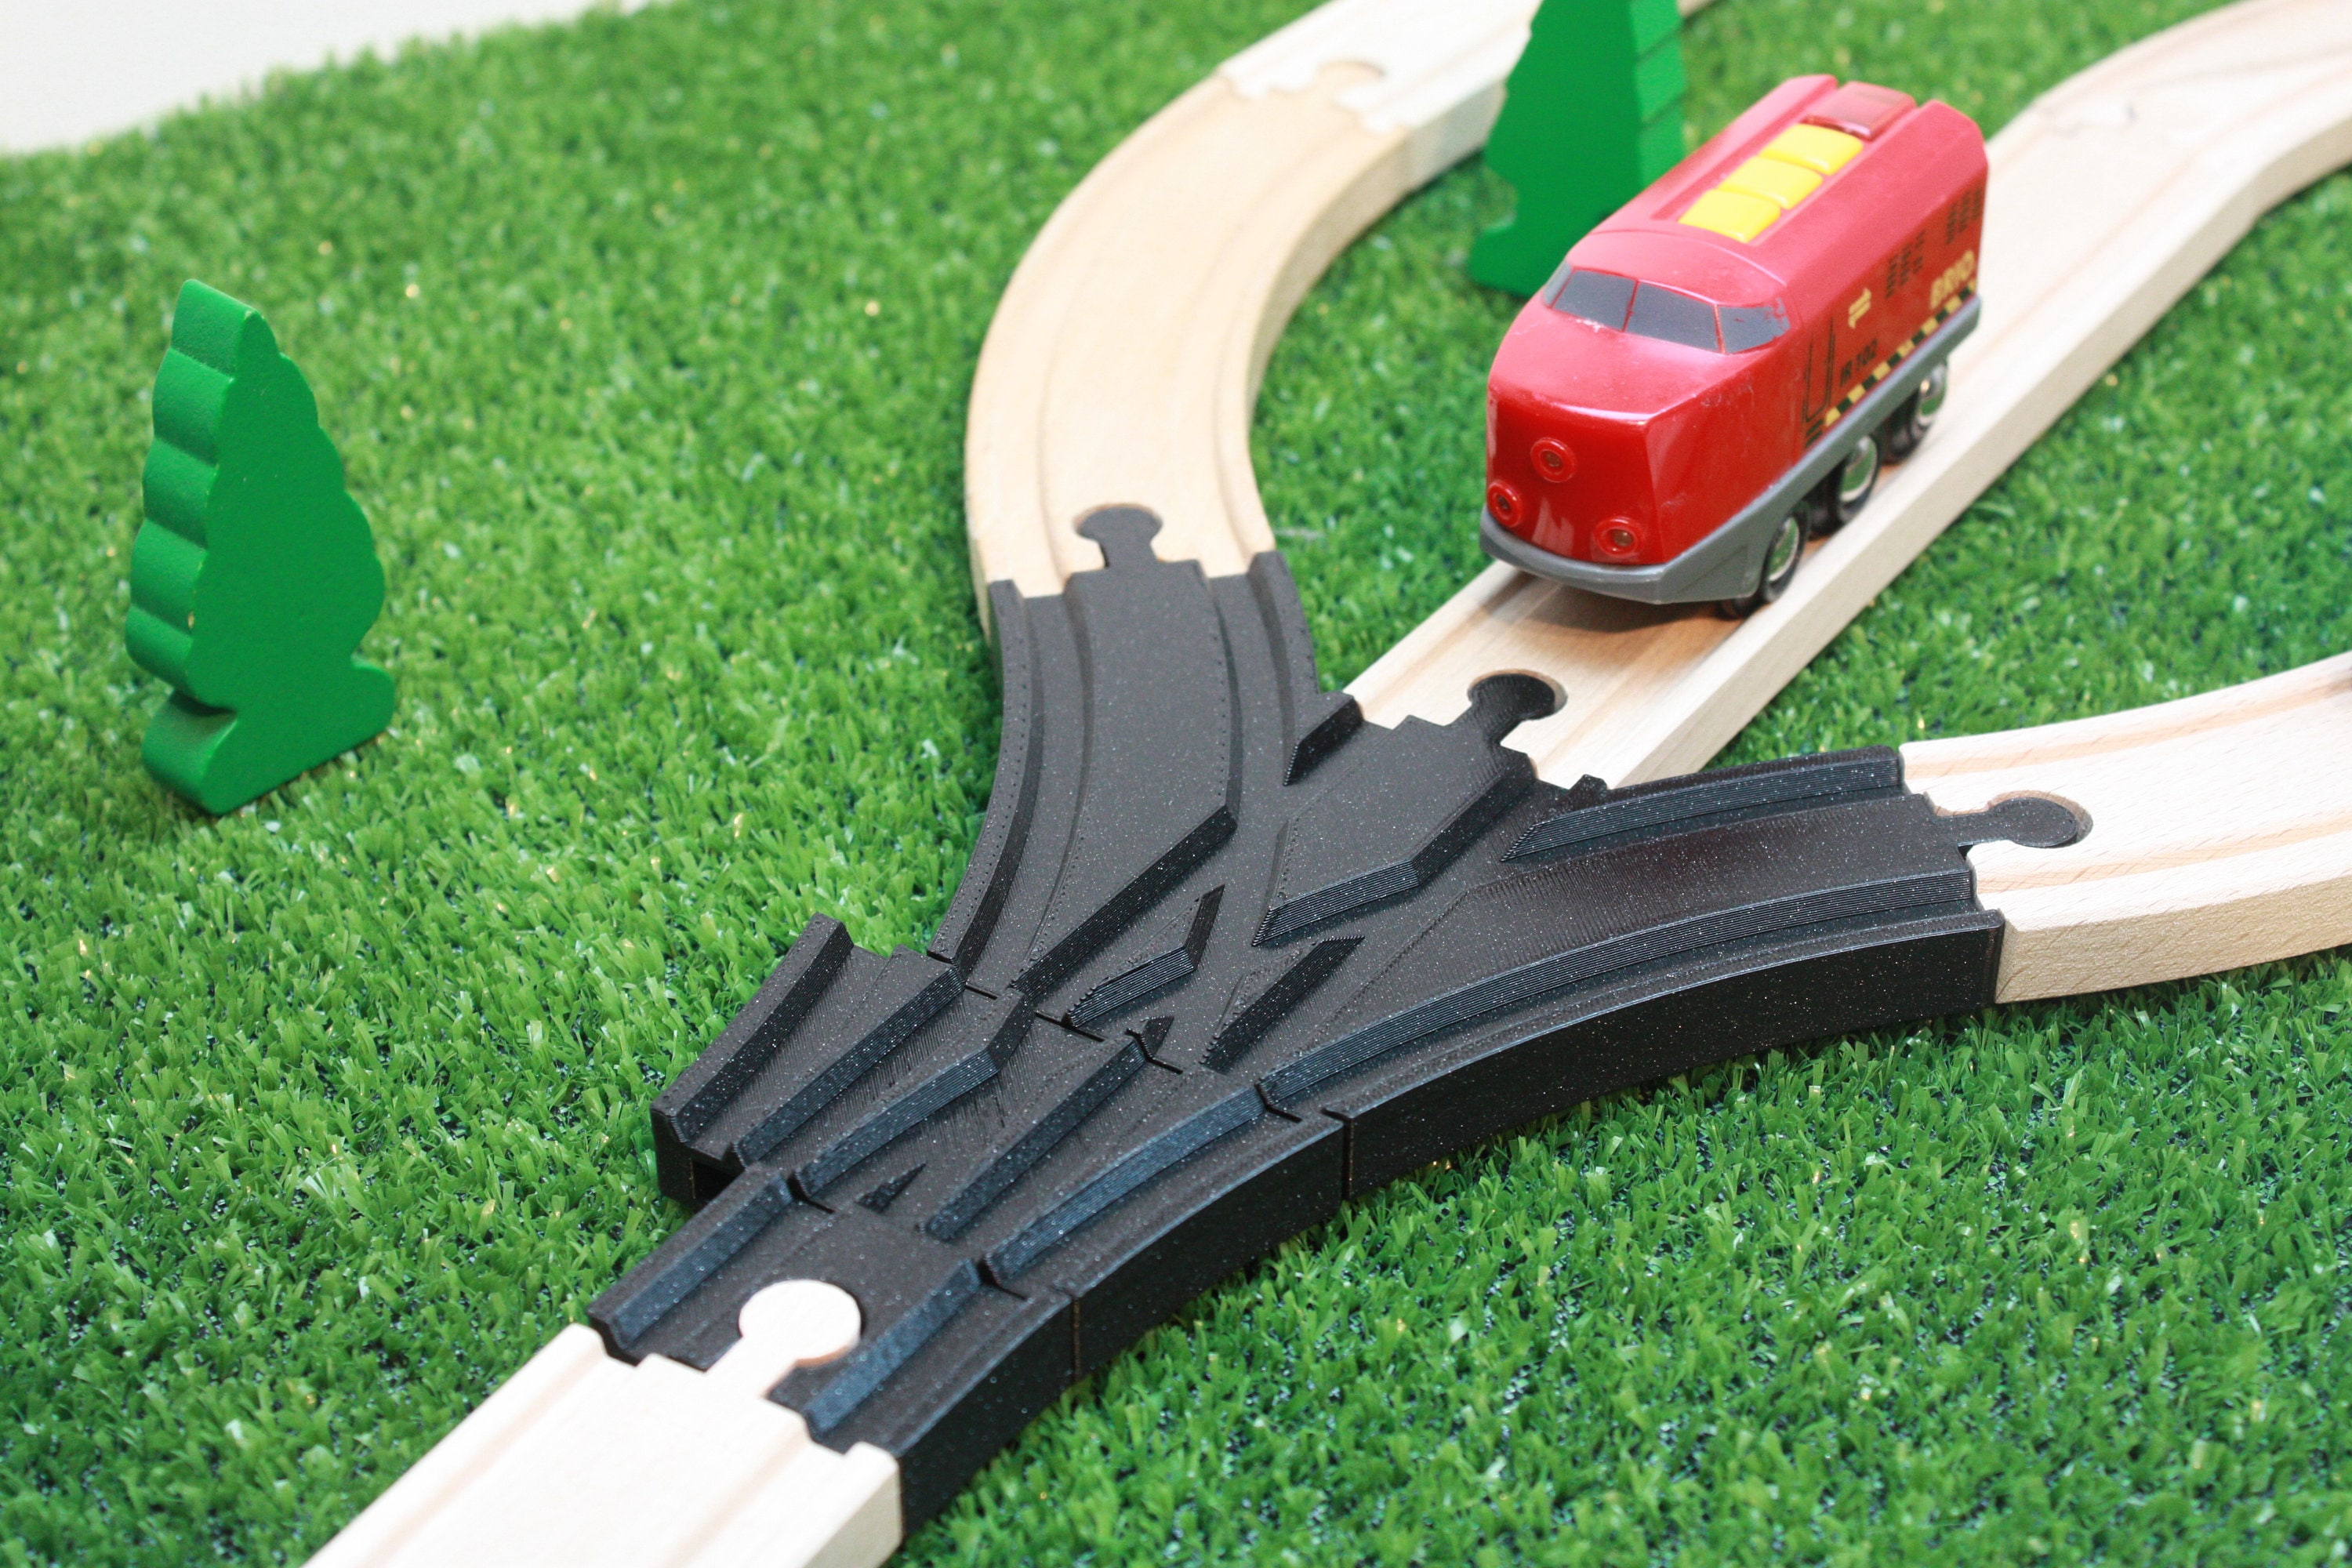 Set de train électrique - pour enfants - Noël - speelgoed de train